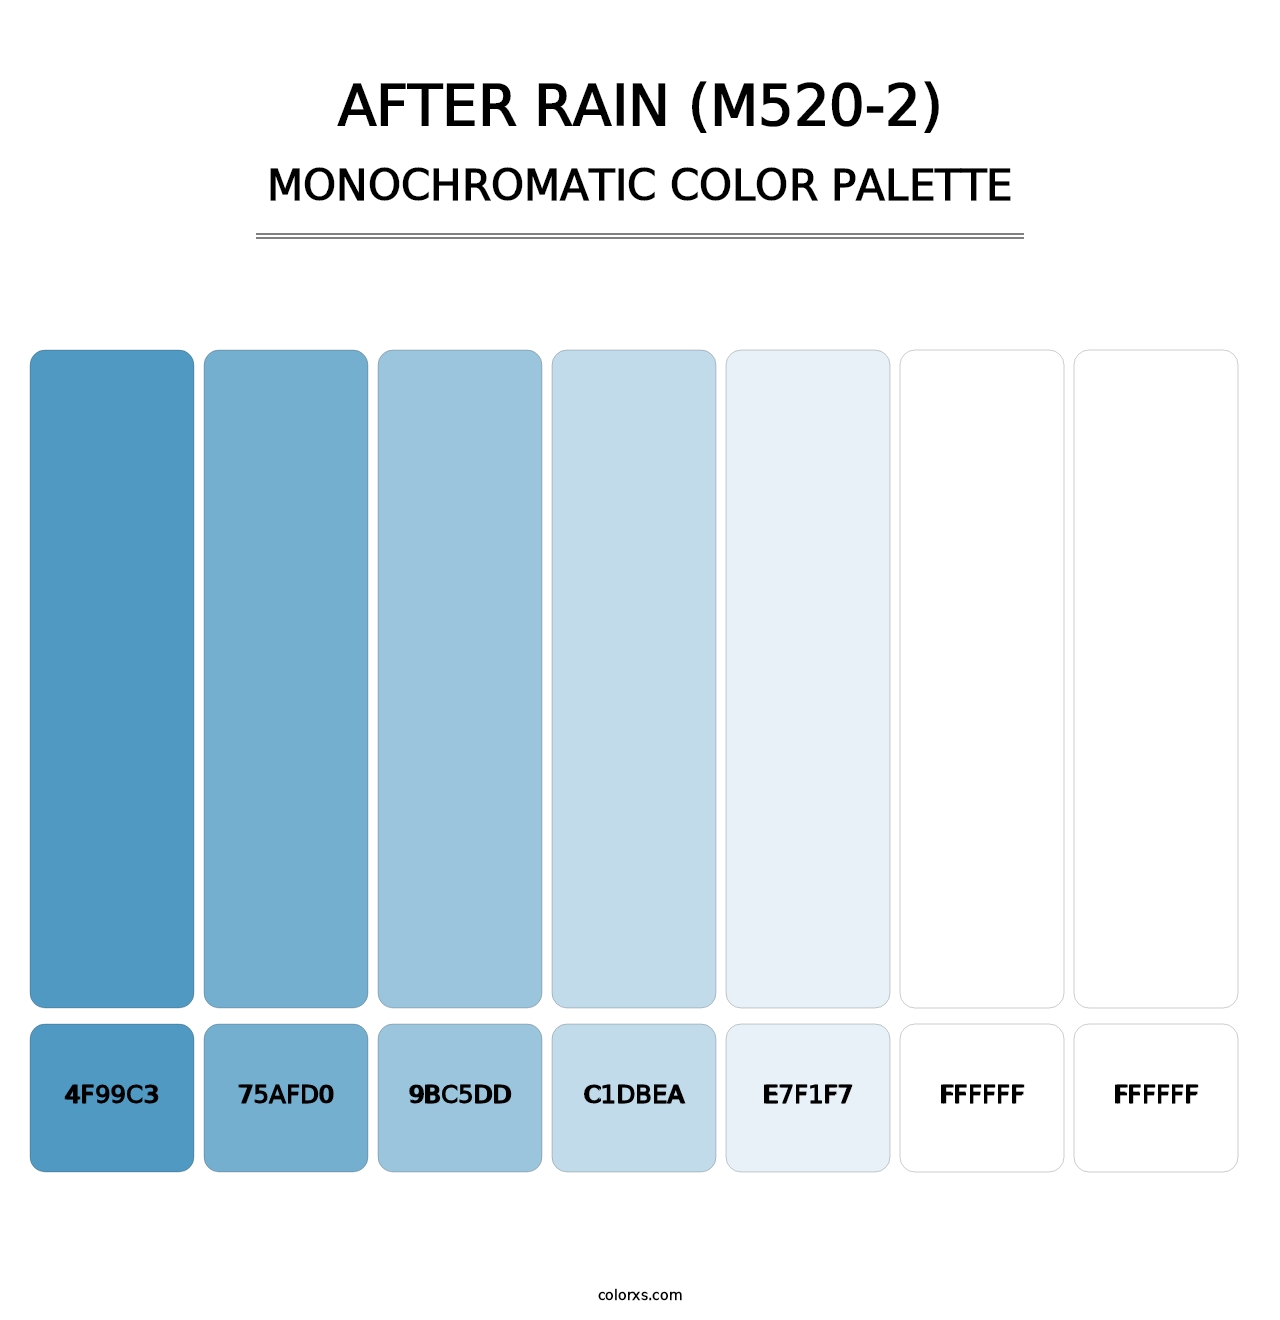 After Rain (M520-2) - Monochromatic Color Palette